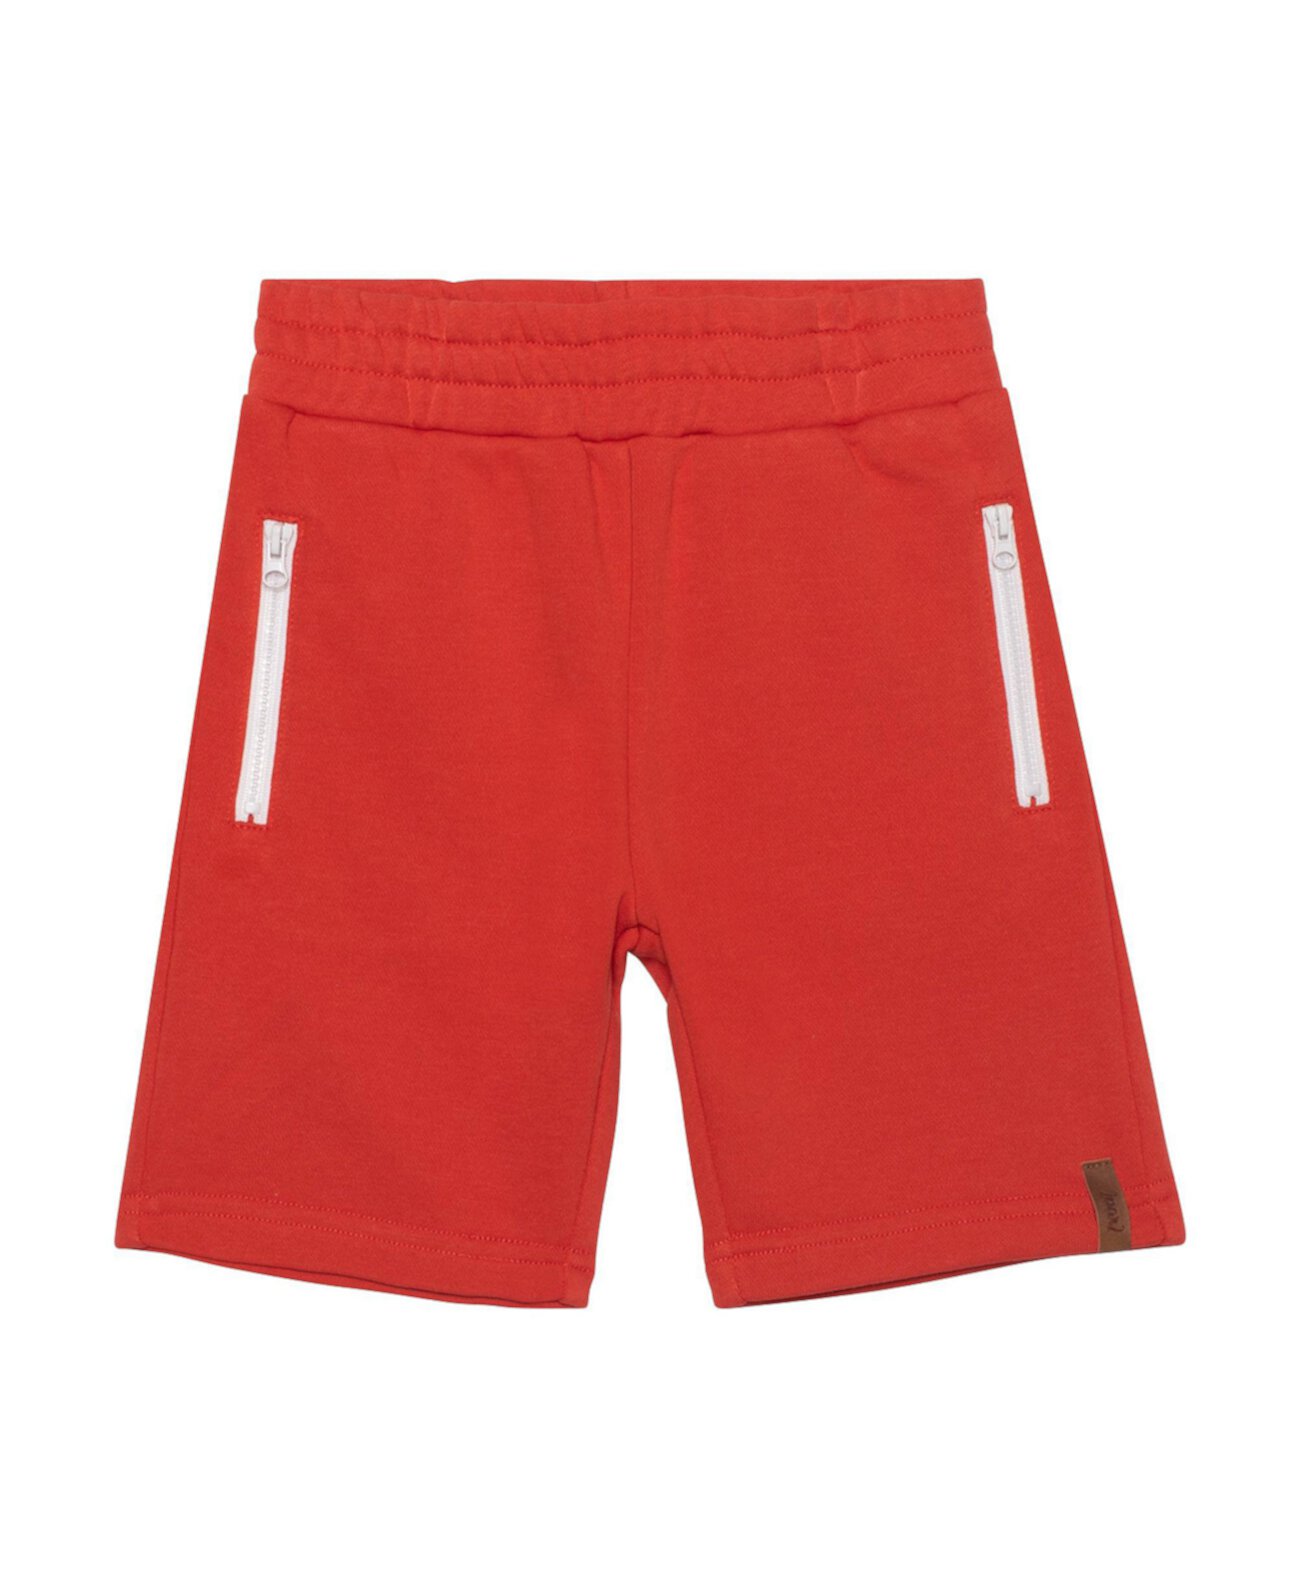 Короткие шорты с карманом на молнии для мальчика, красные - для малышей|Детей Deux par Deux